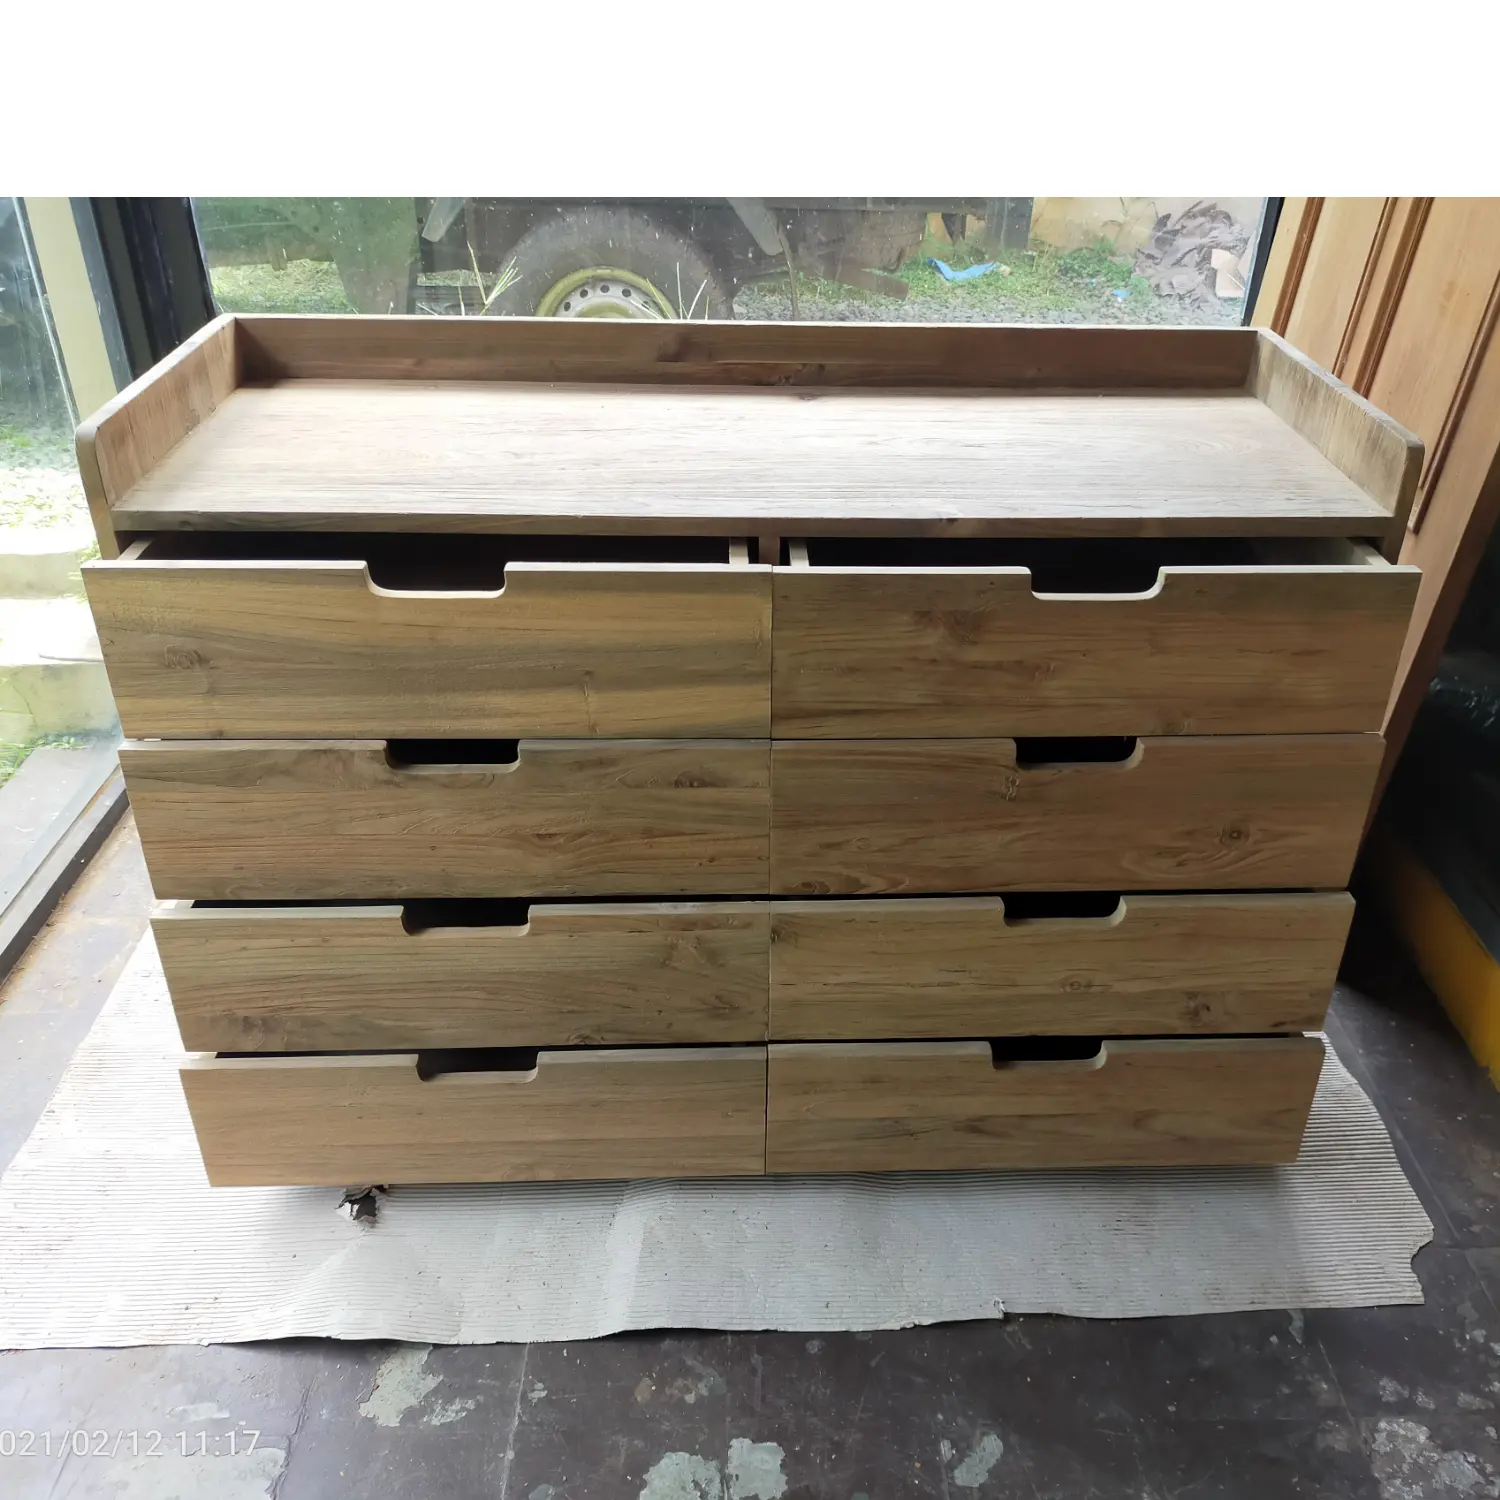 Reclaimed teak furniture with Elegance in Wood Rustic Teak Sideboard Buffet Cabinet Crafted Taste Reclaimed Wood Sideboard